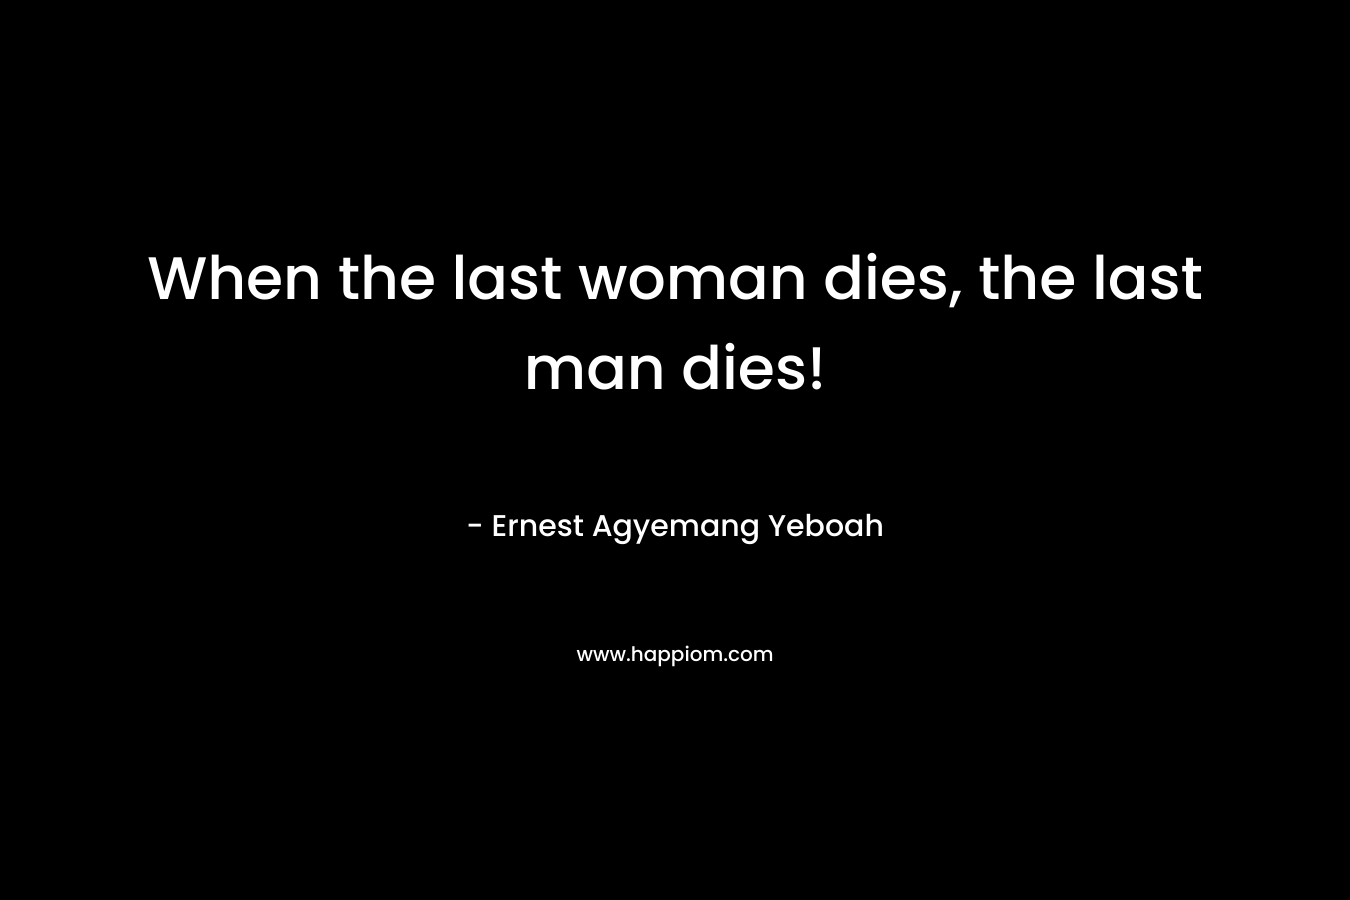 When the last woman dies, the last man dies!